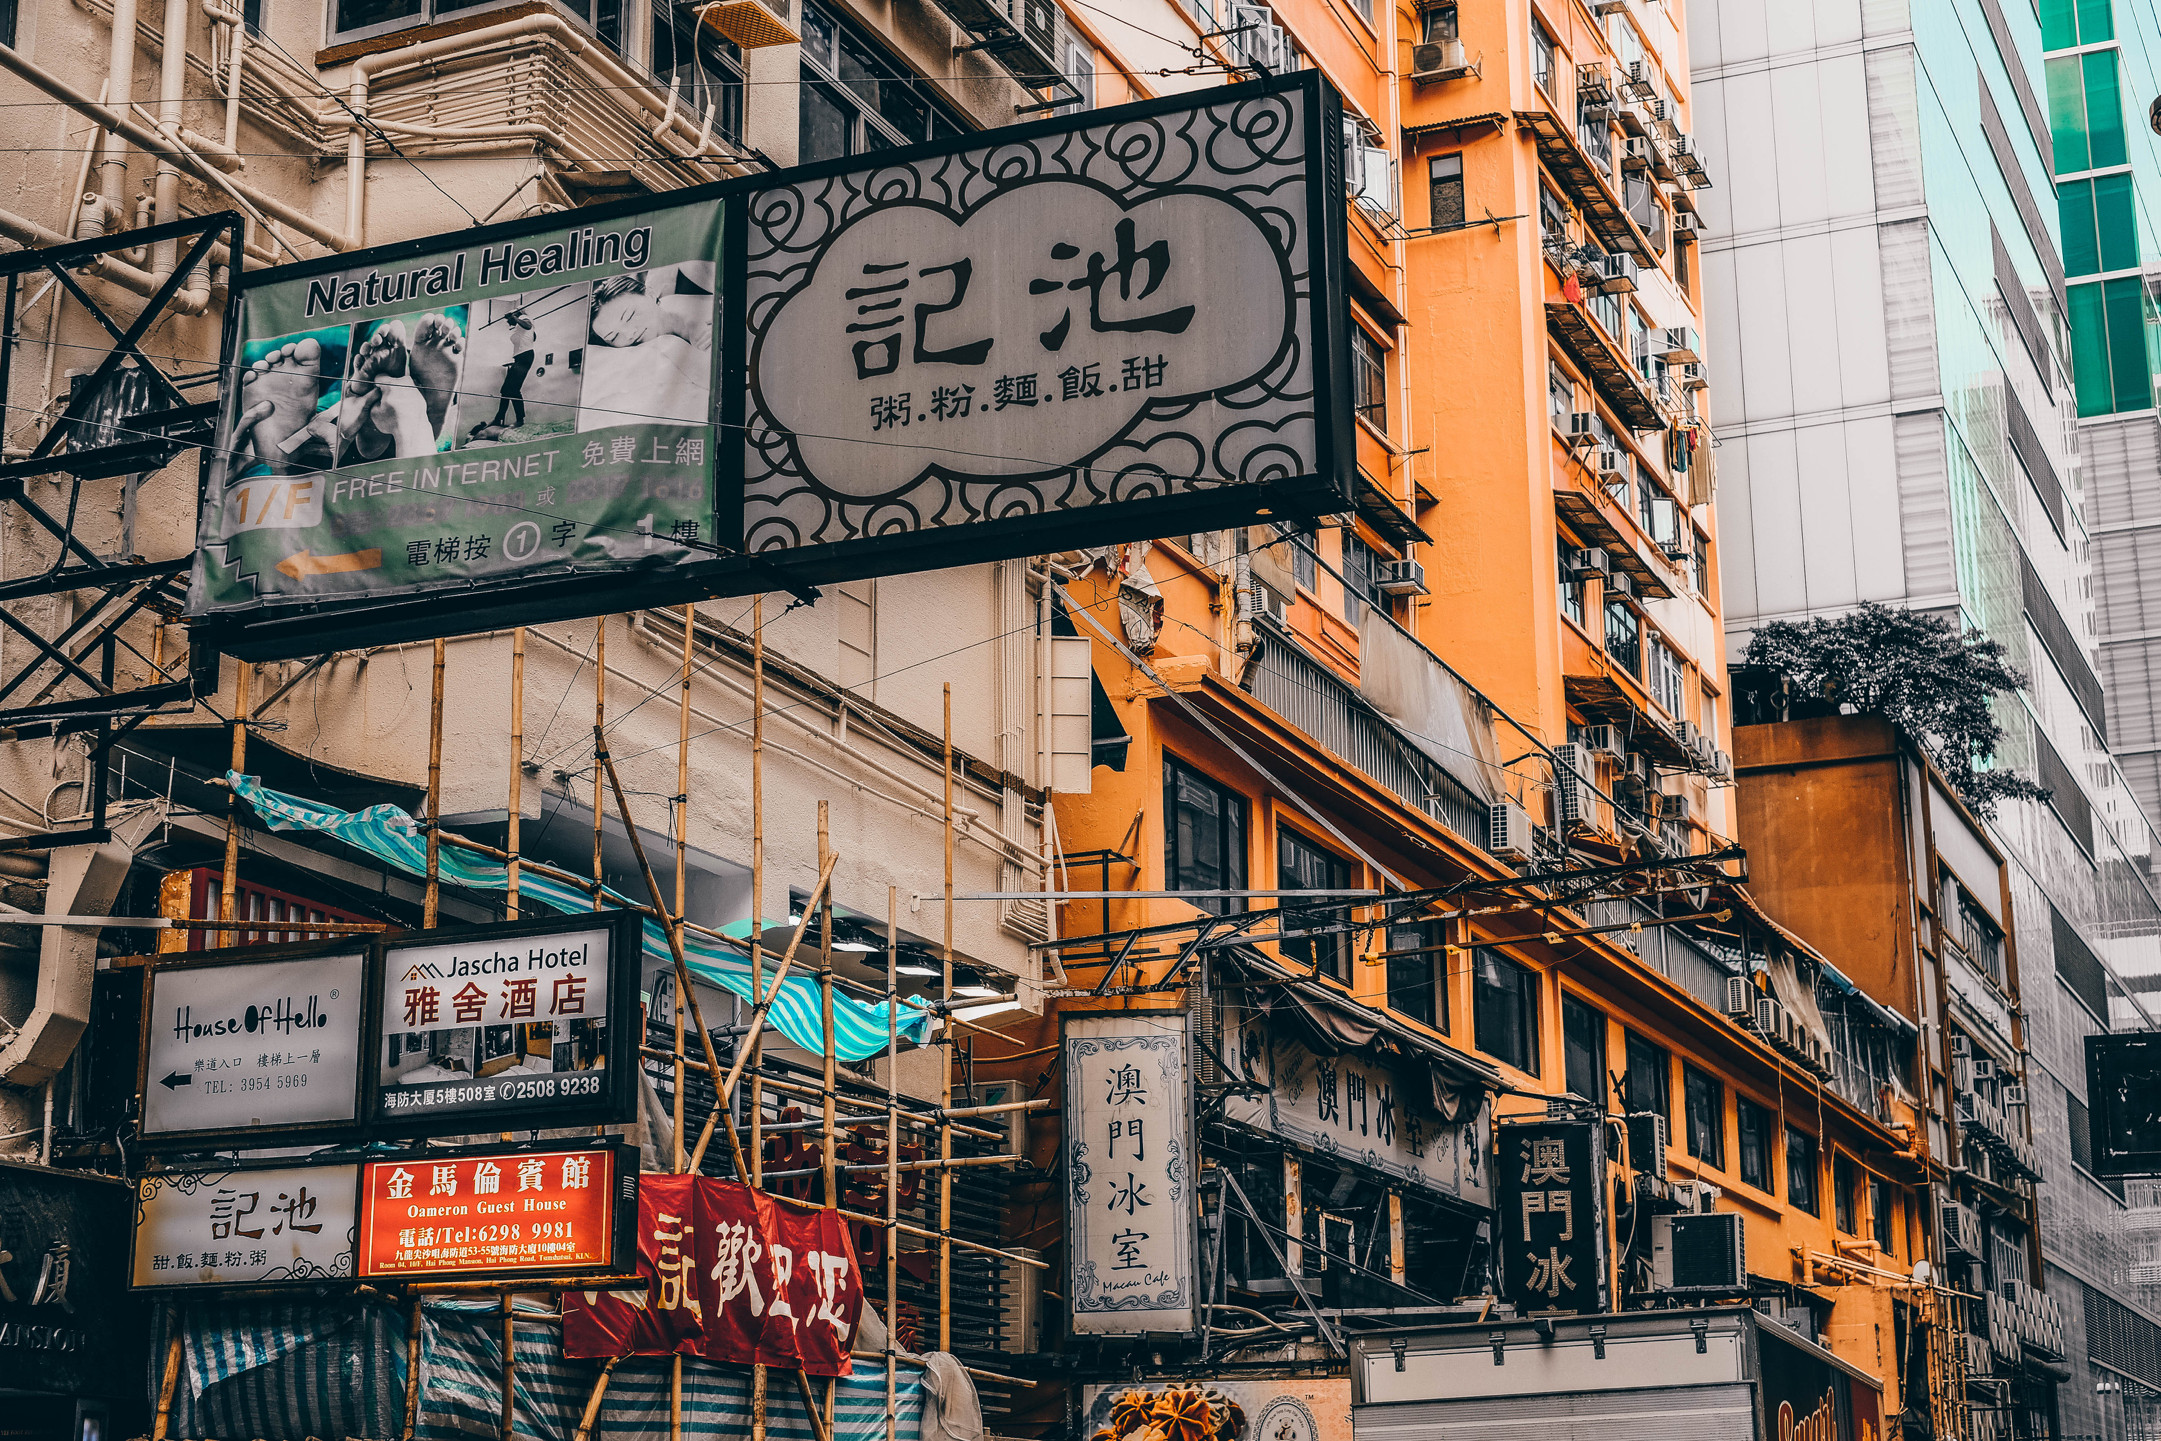 香港街道,或是世界上最有烟火气的地方